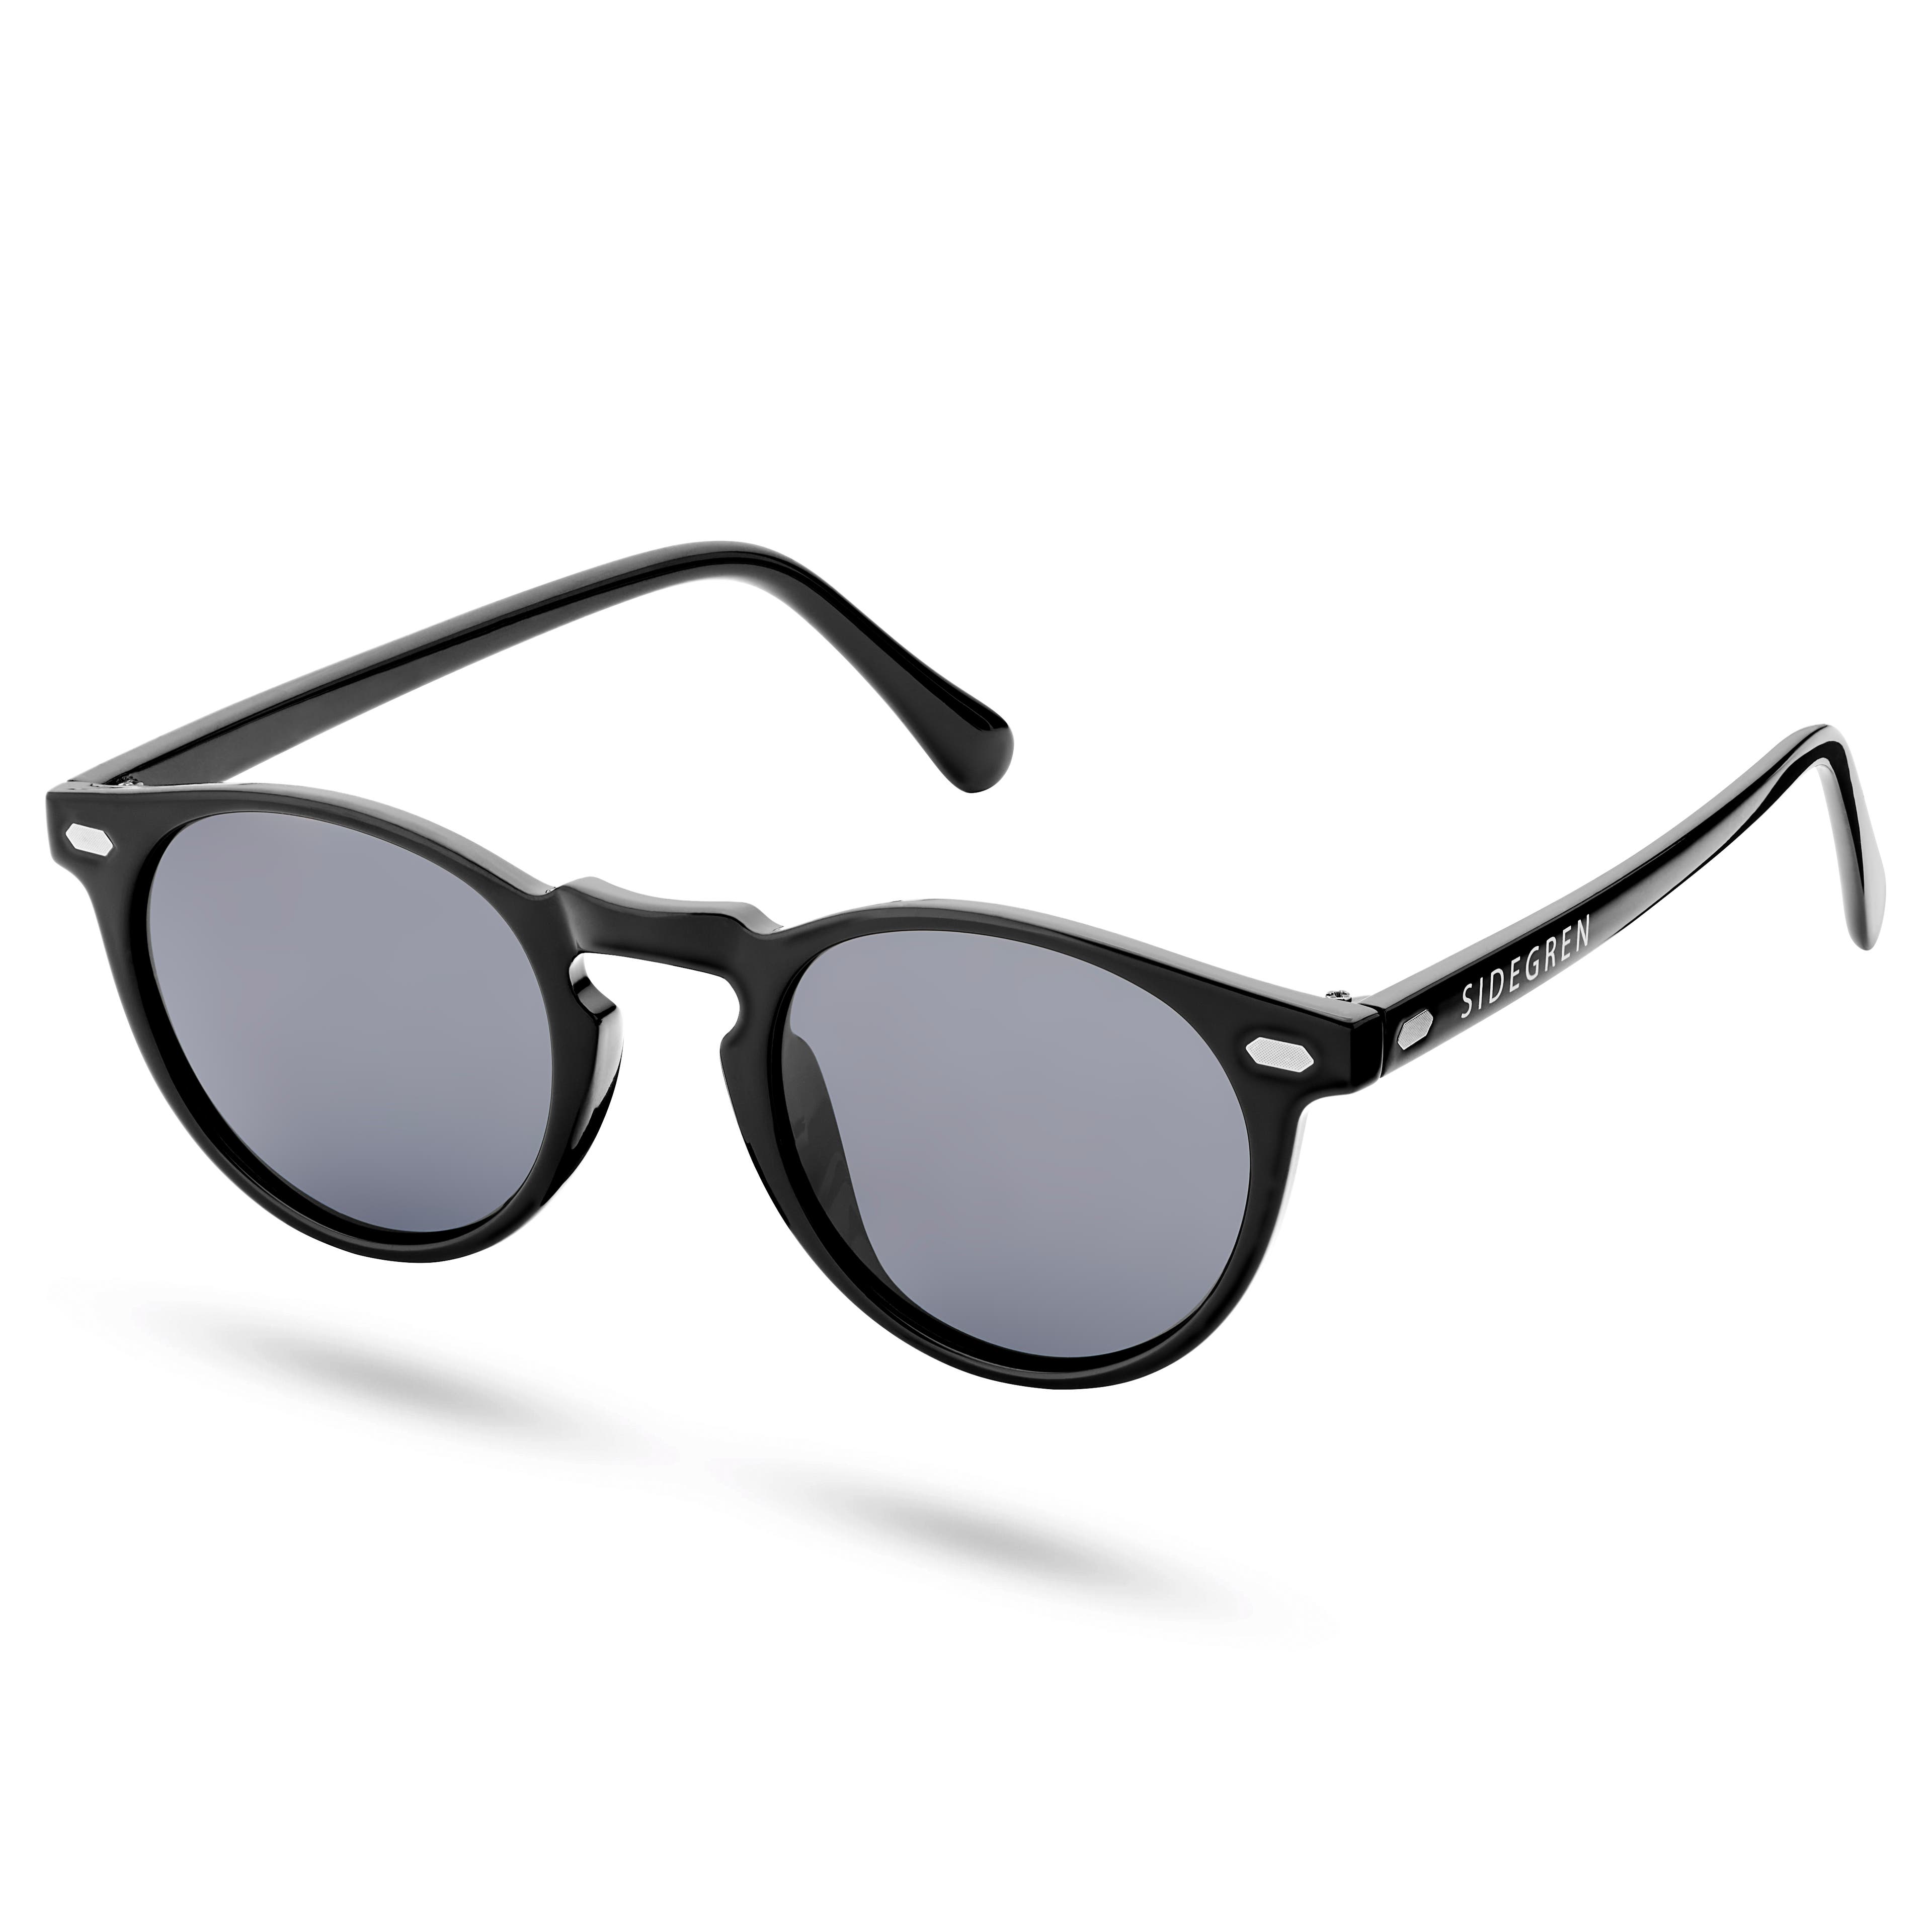 Schwarze, runde, polarisierte Retro-Sonnenbrille